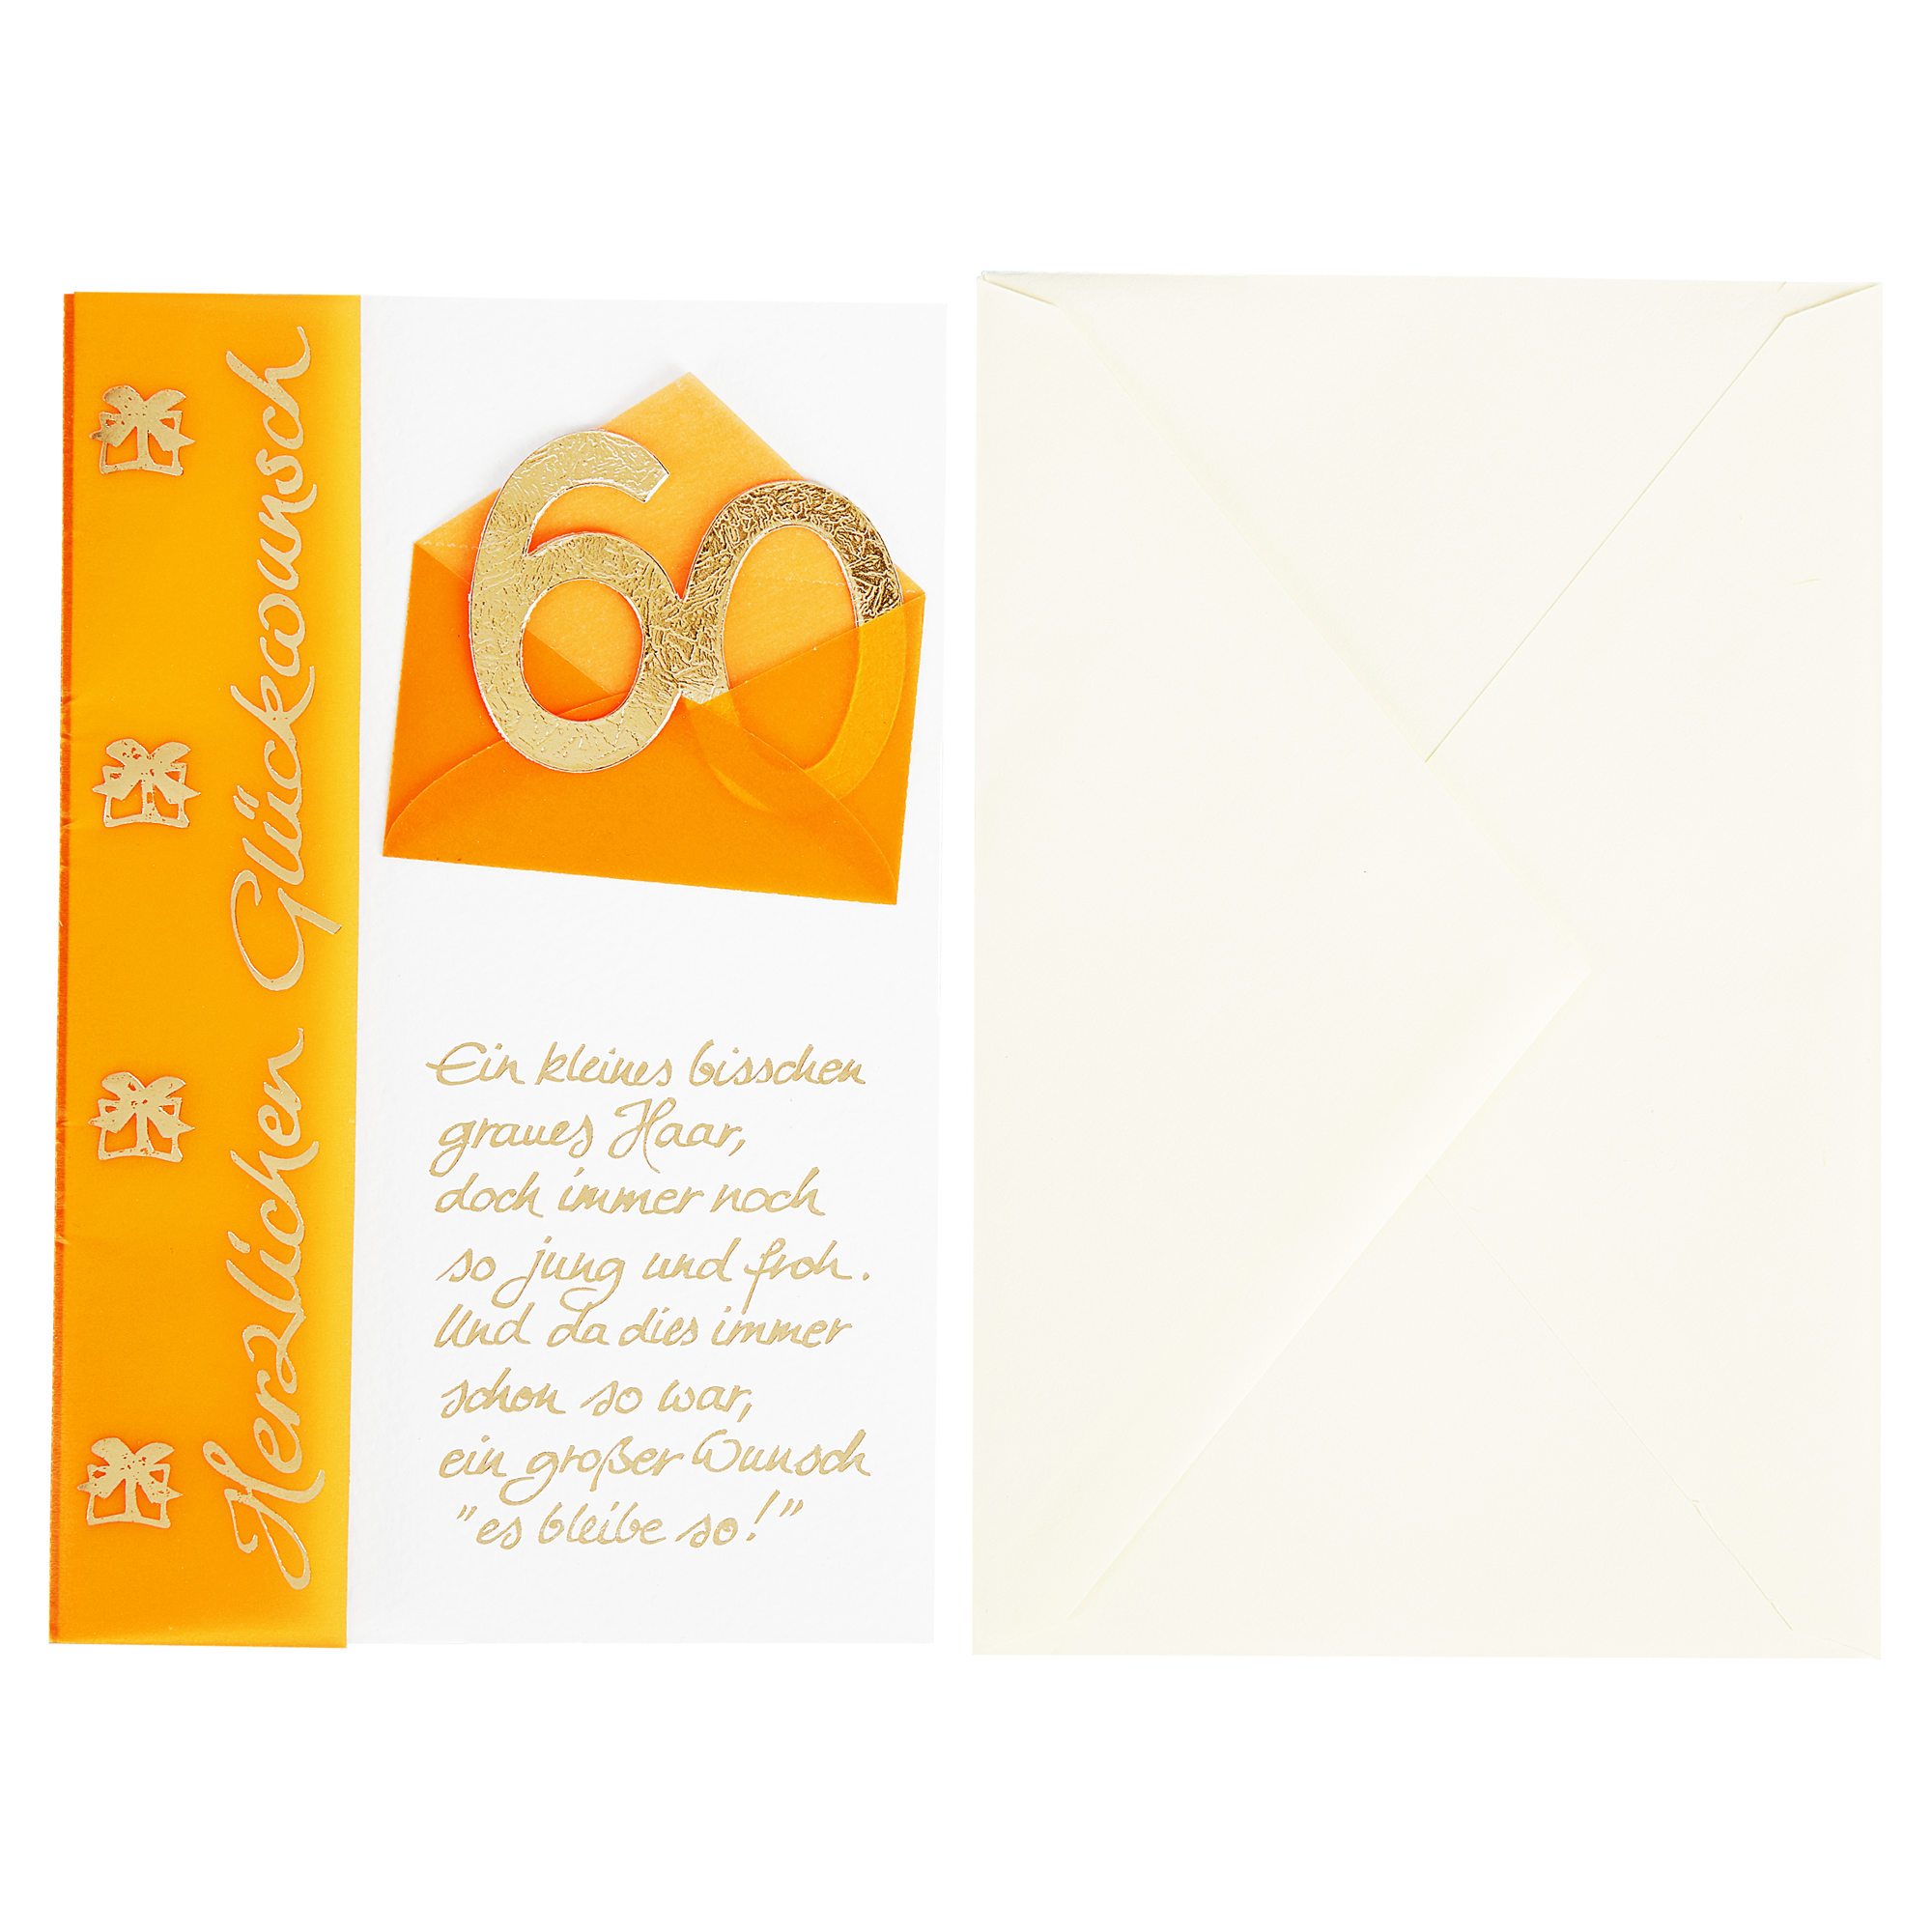 Grußkarten mit Umschlag + product picture